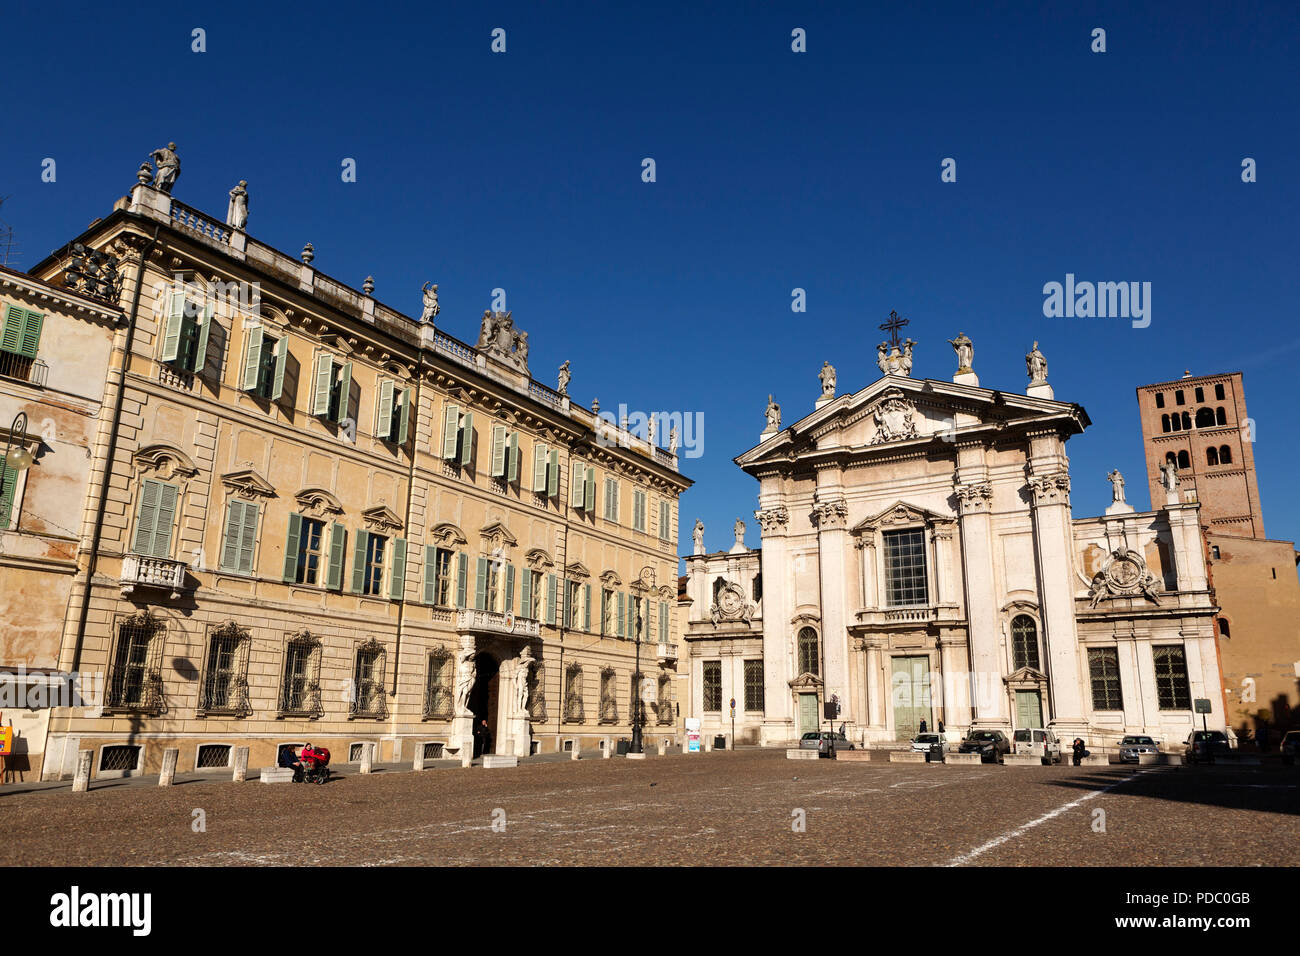 Facciate di Palazzo Sordello e Duomo di Mantova, visto dalla Piazza Sordello, a Mantova, Italia. La cattedrale barocca è dedicata a San Pietro. Foto Stock